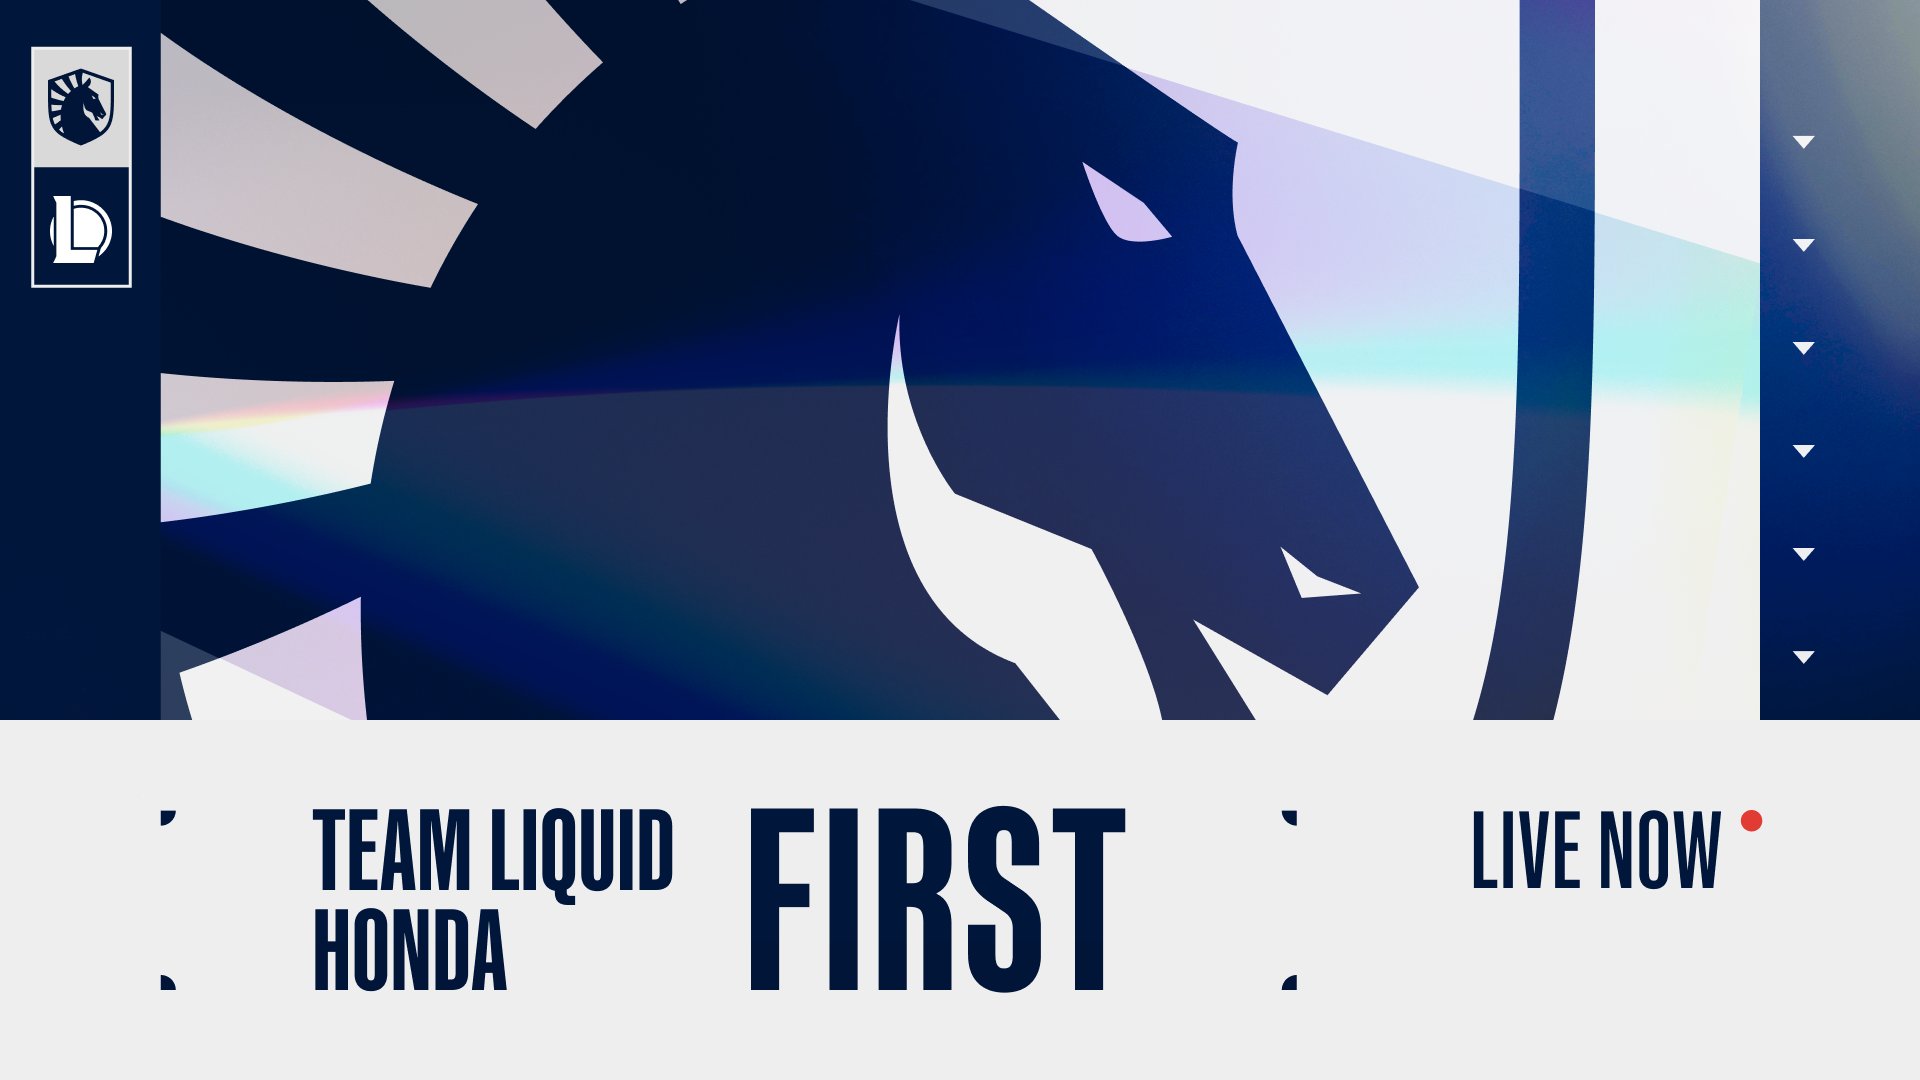 Team Liquid Honda LoL on Twitter